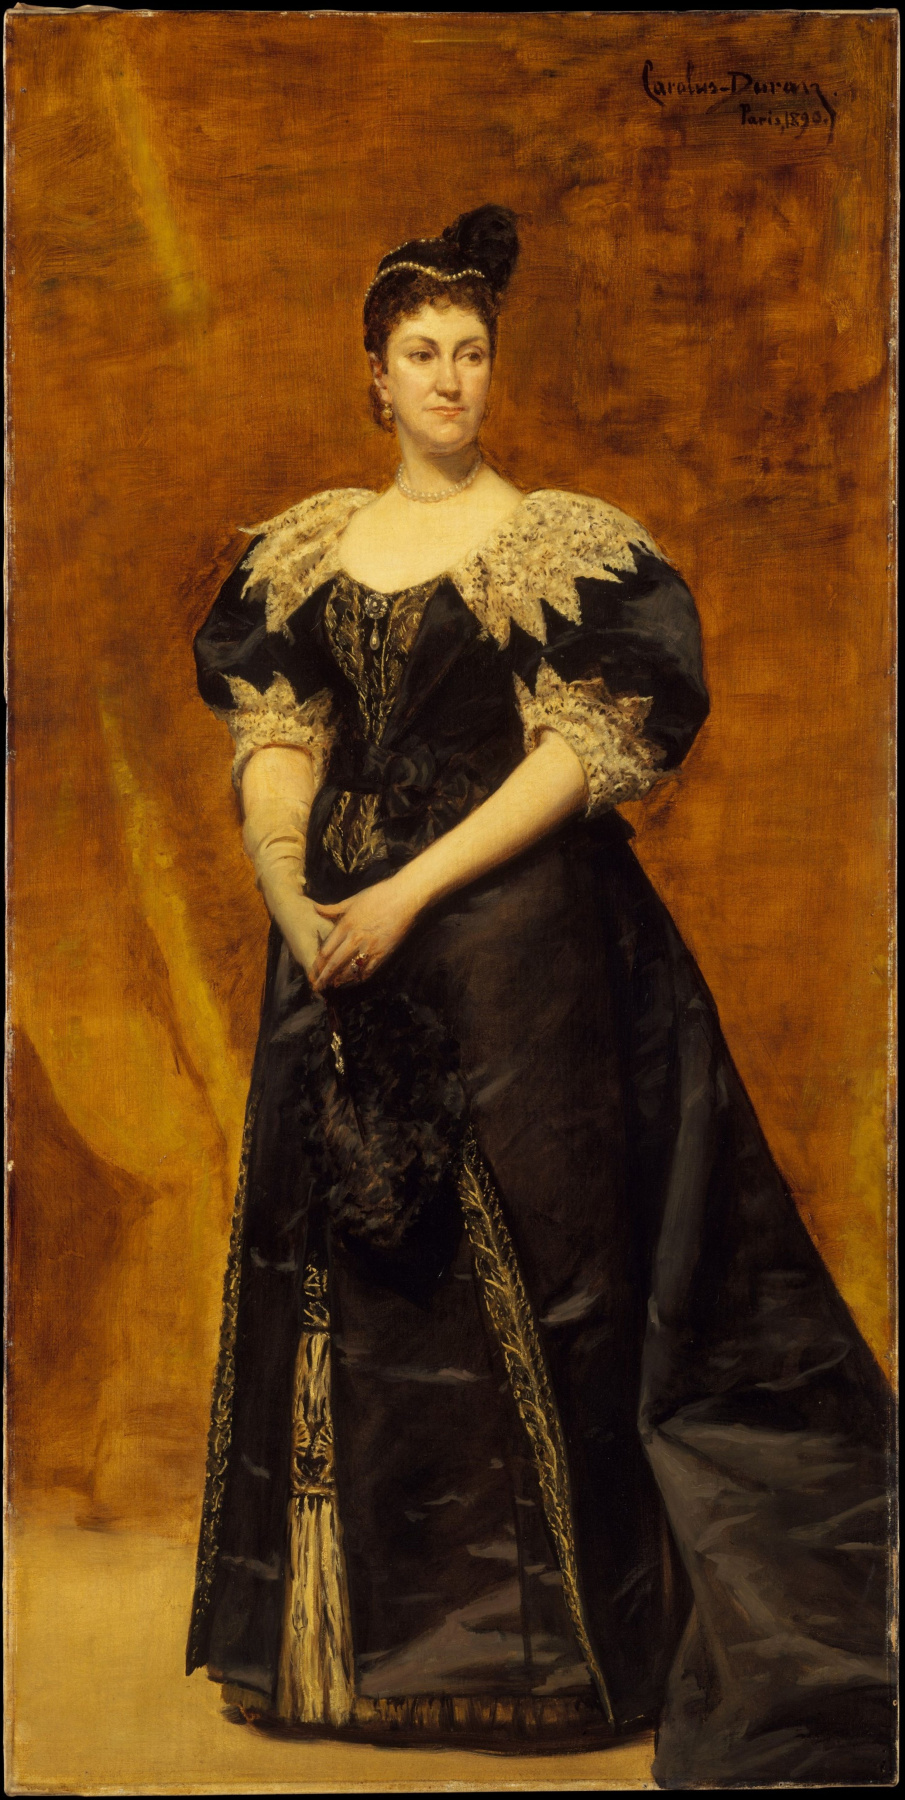 Carolus-Durand. Mrs. William Astor